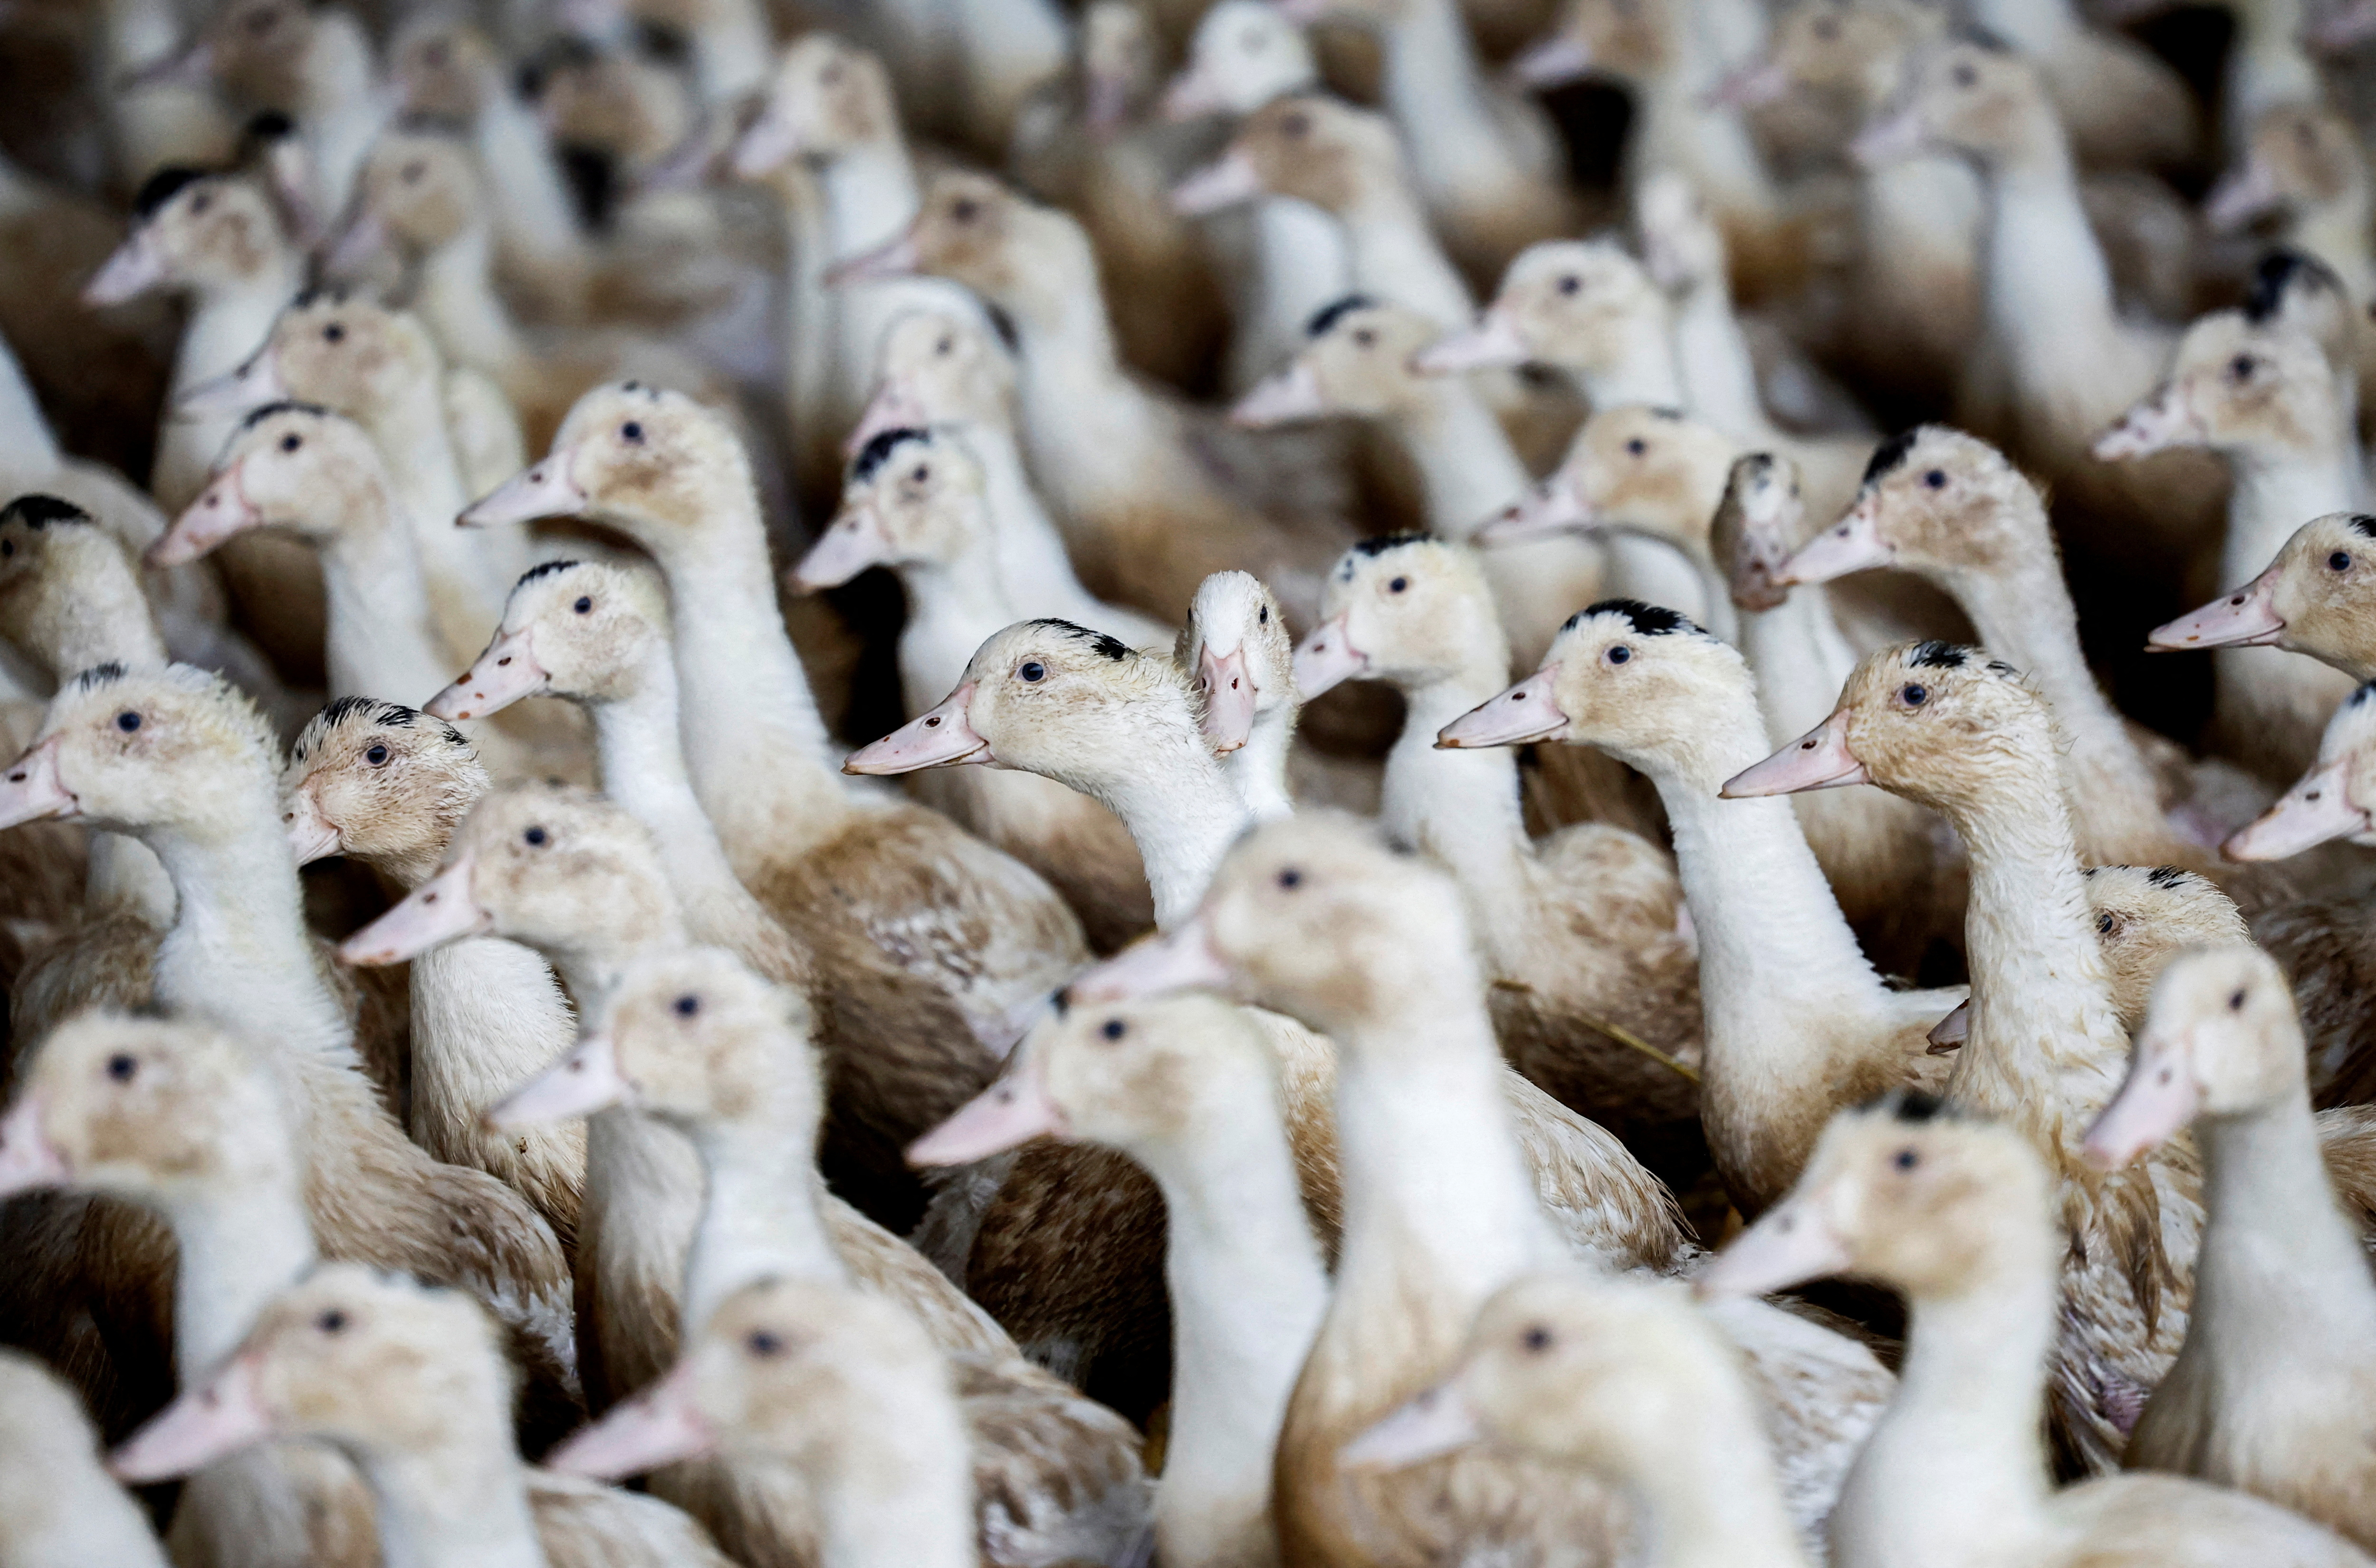 Η Γαλλία βρίσκεται σε συναγερμό λόγω της γρίπης των πτηνών μετά την ανακάλυψη νέων κρουσμάτων